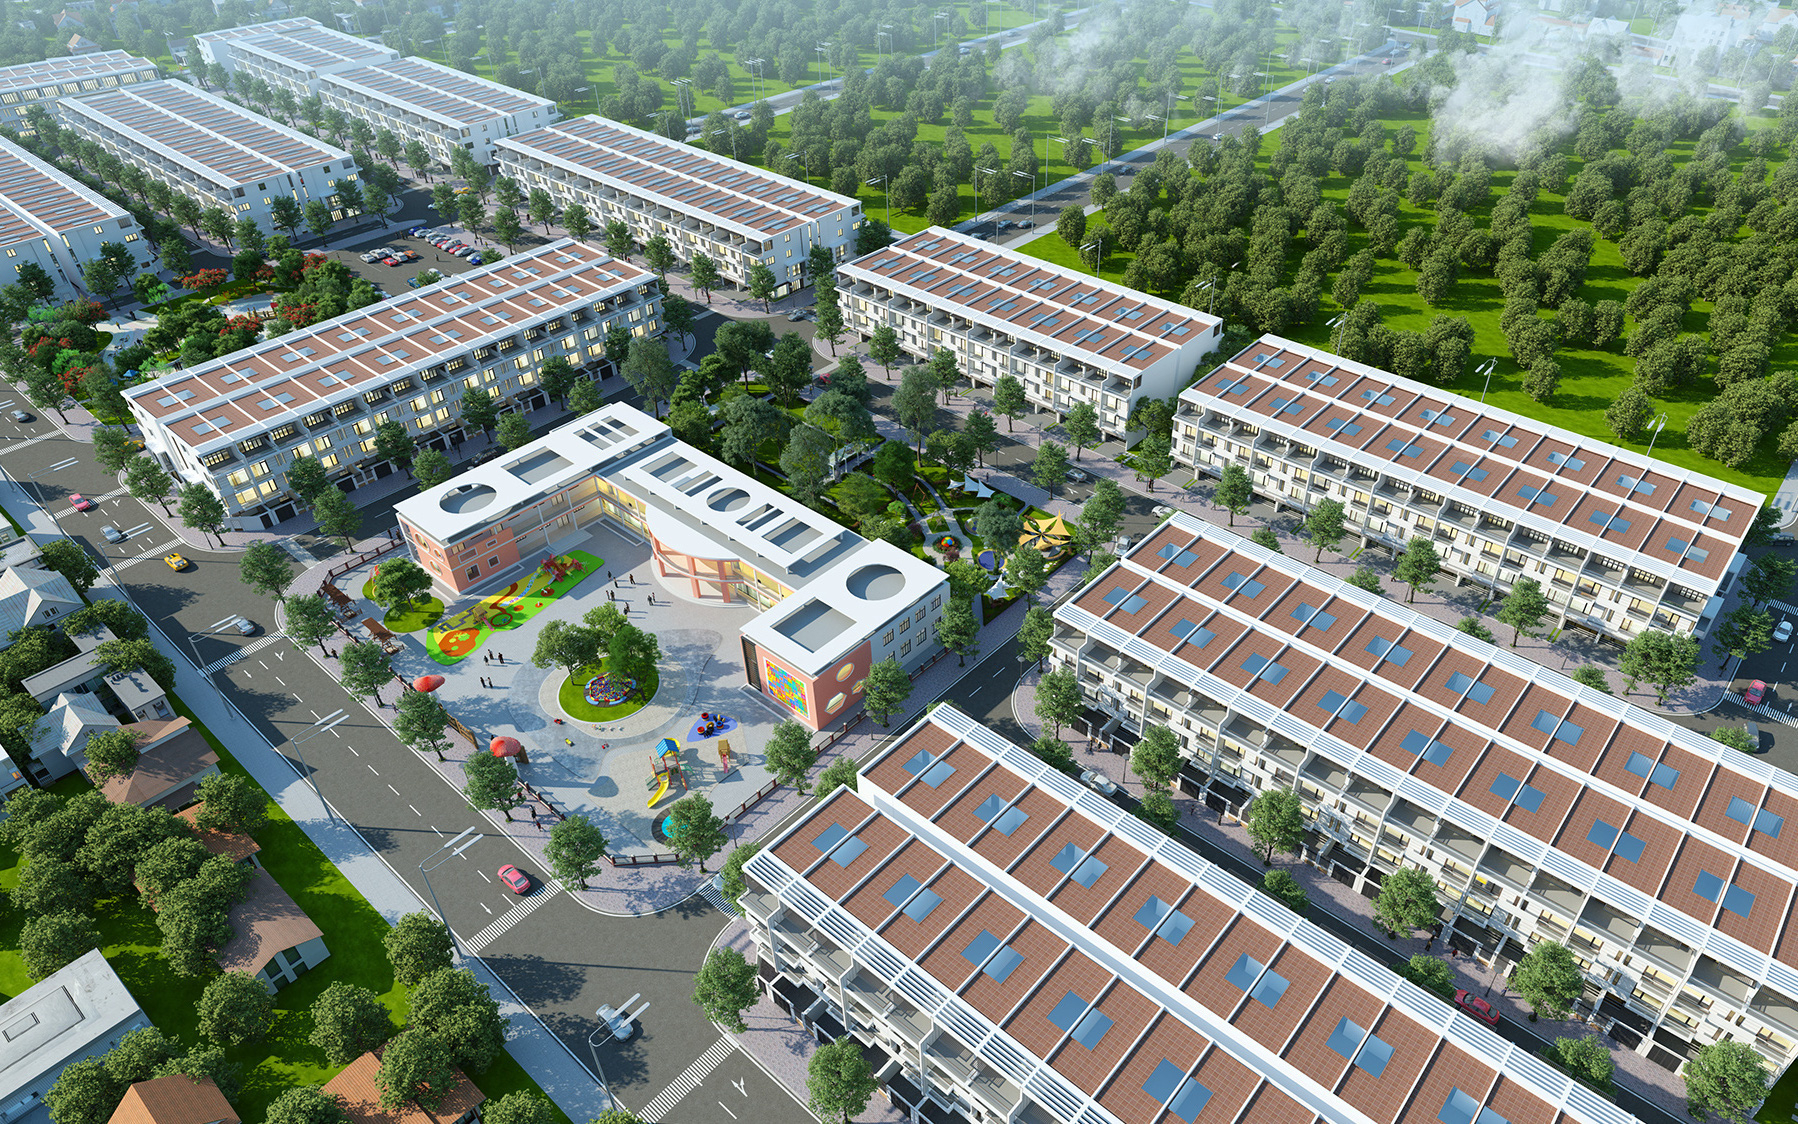 Ra mắt dự án đất nền Yên Phụ New Life – khu đất nền mới nổi tại Bắc Ninh vào ngày 12/7